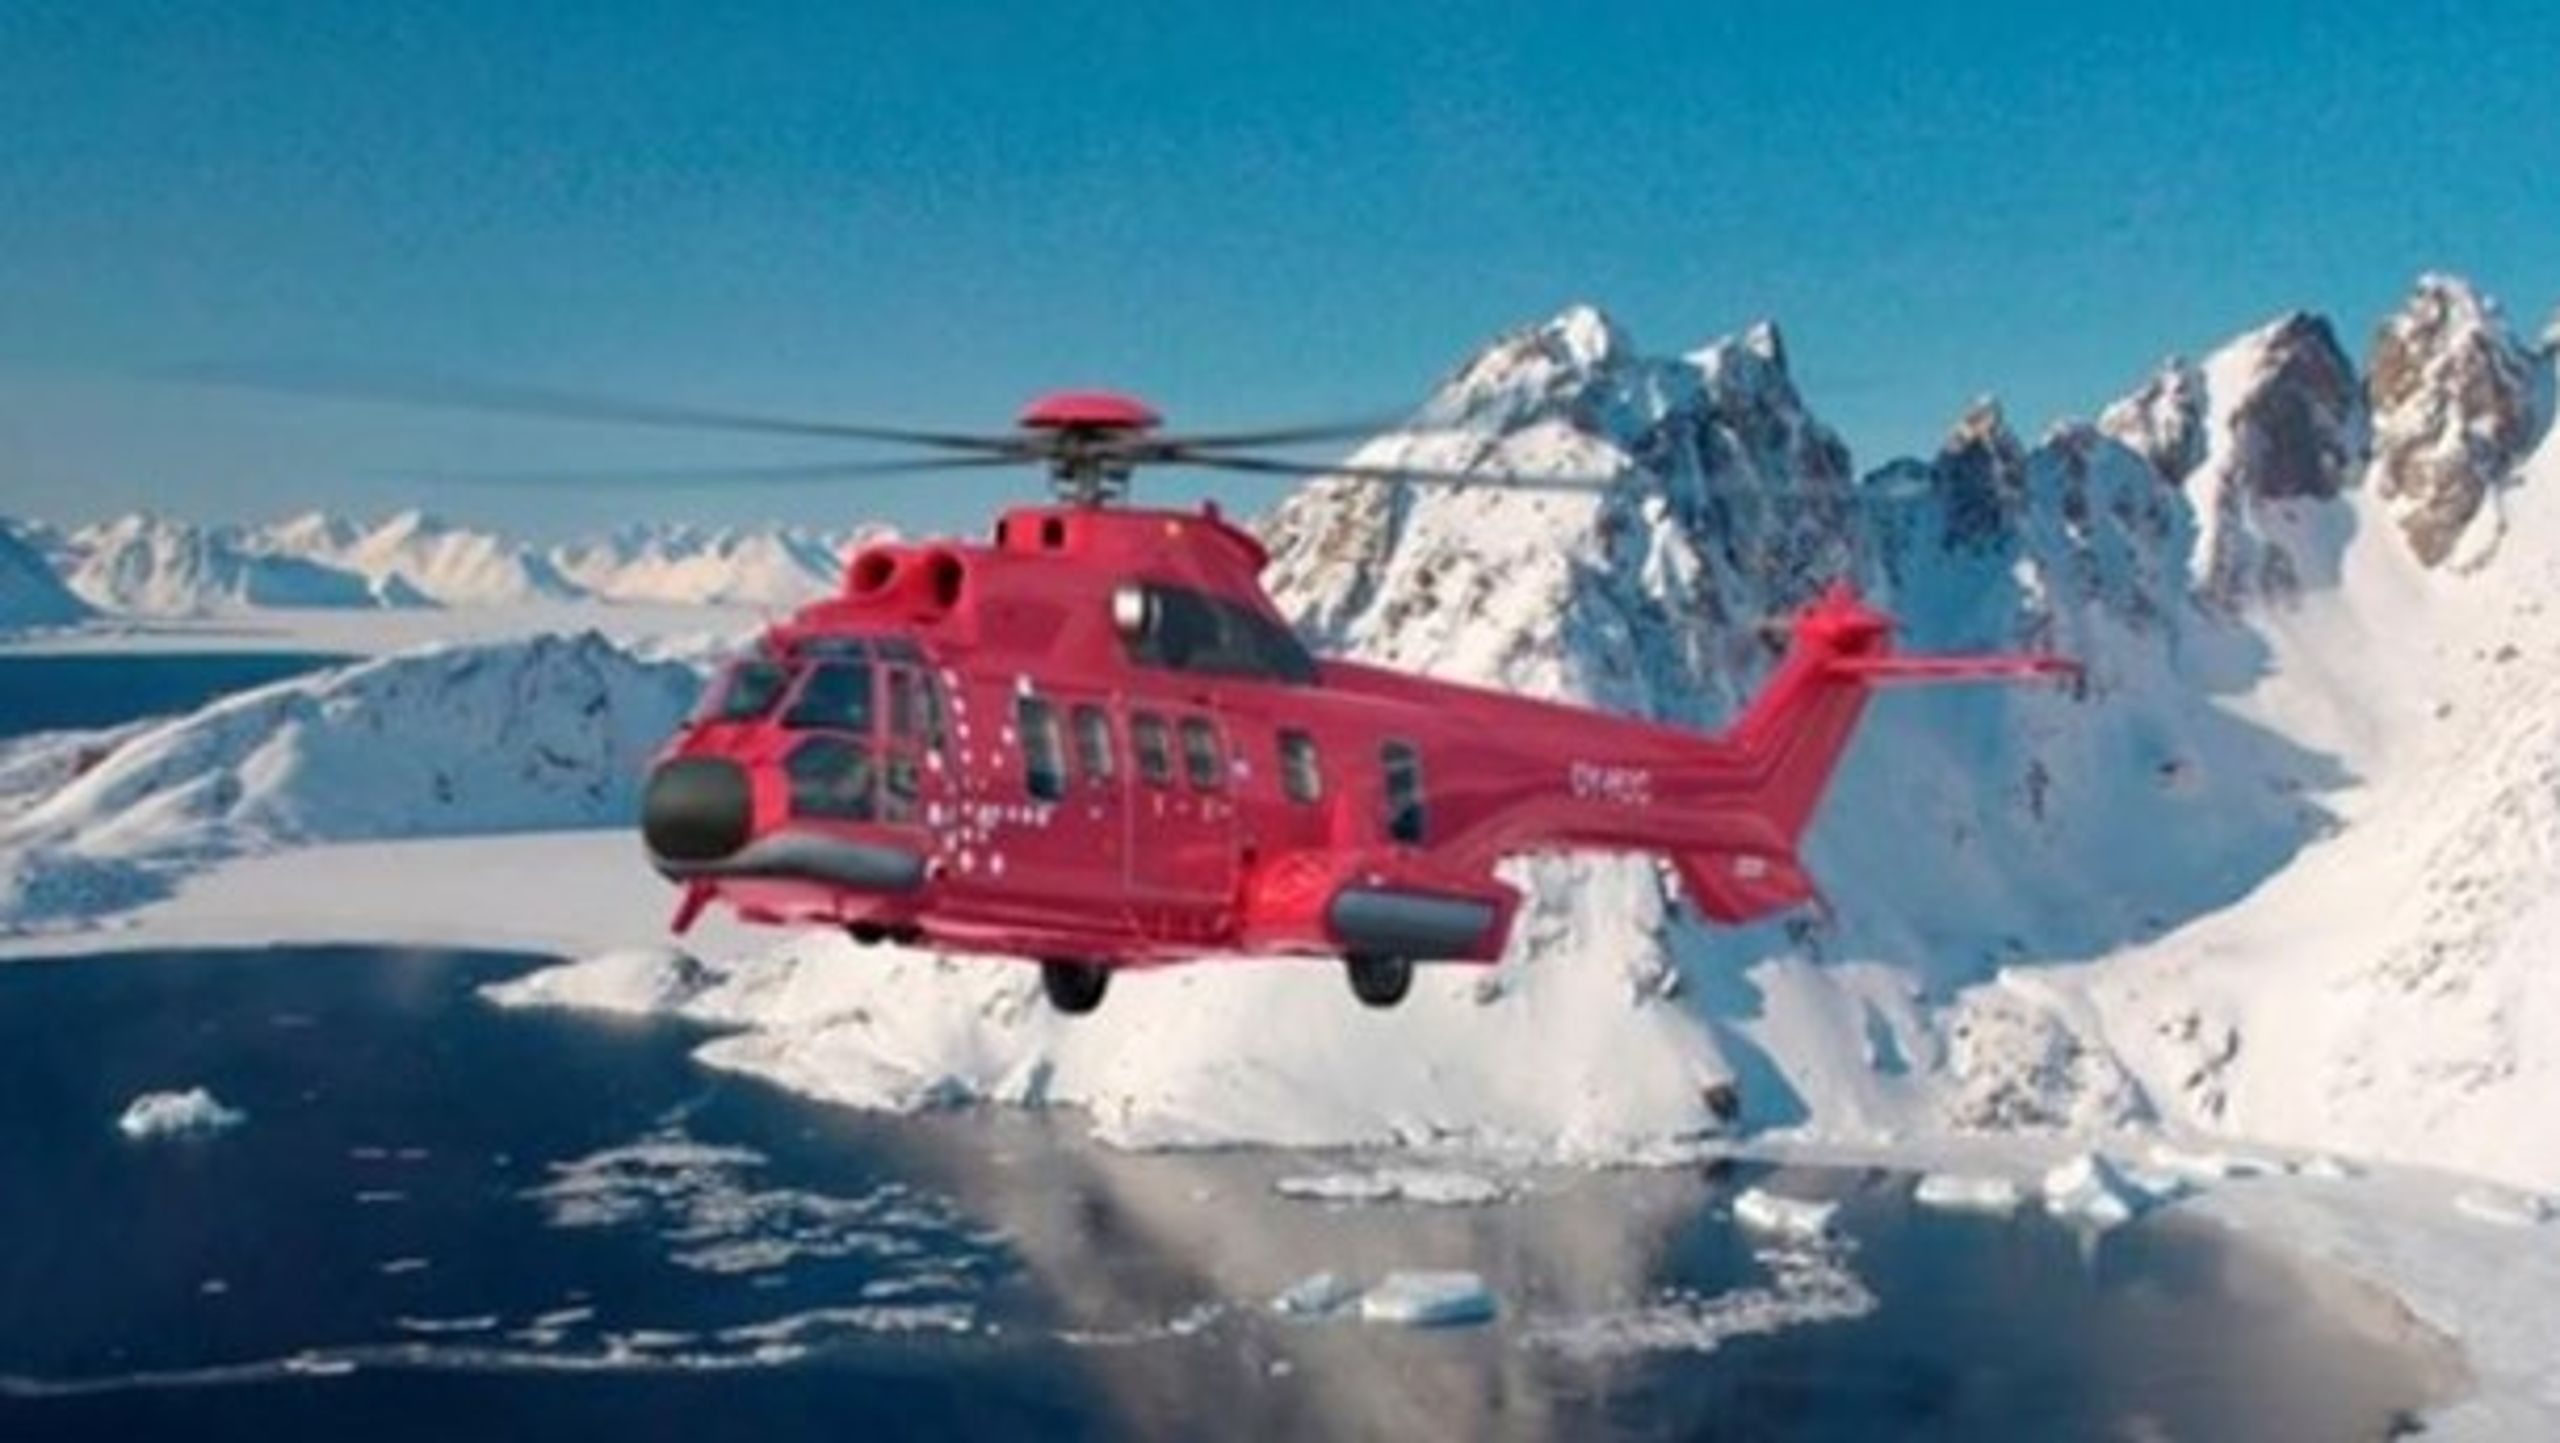 Illustration af EC225-helikopter, som Air Greenland bestilte i 2011, men siden afbestilte.